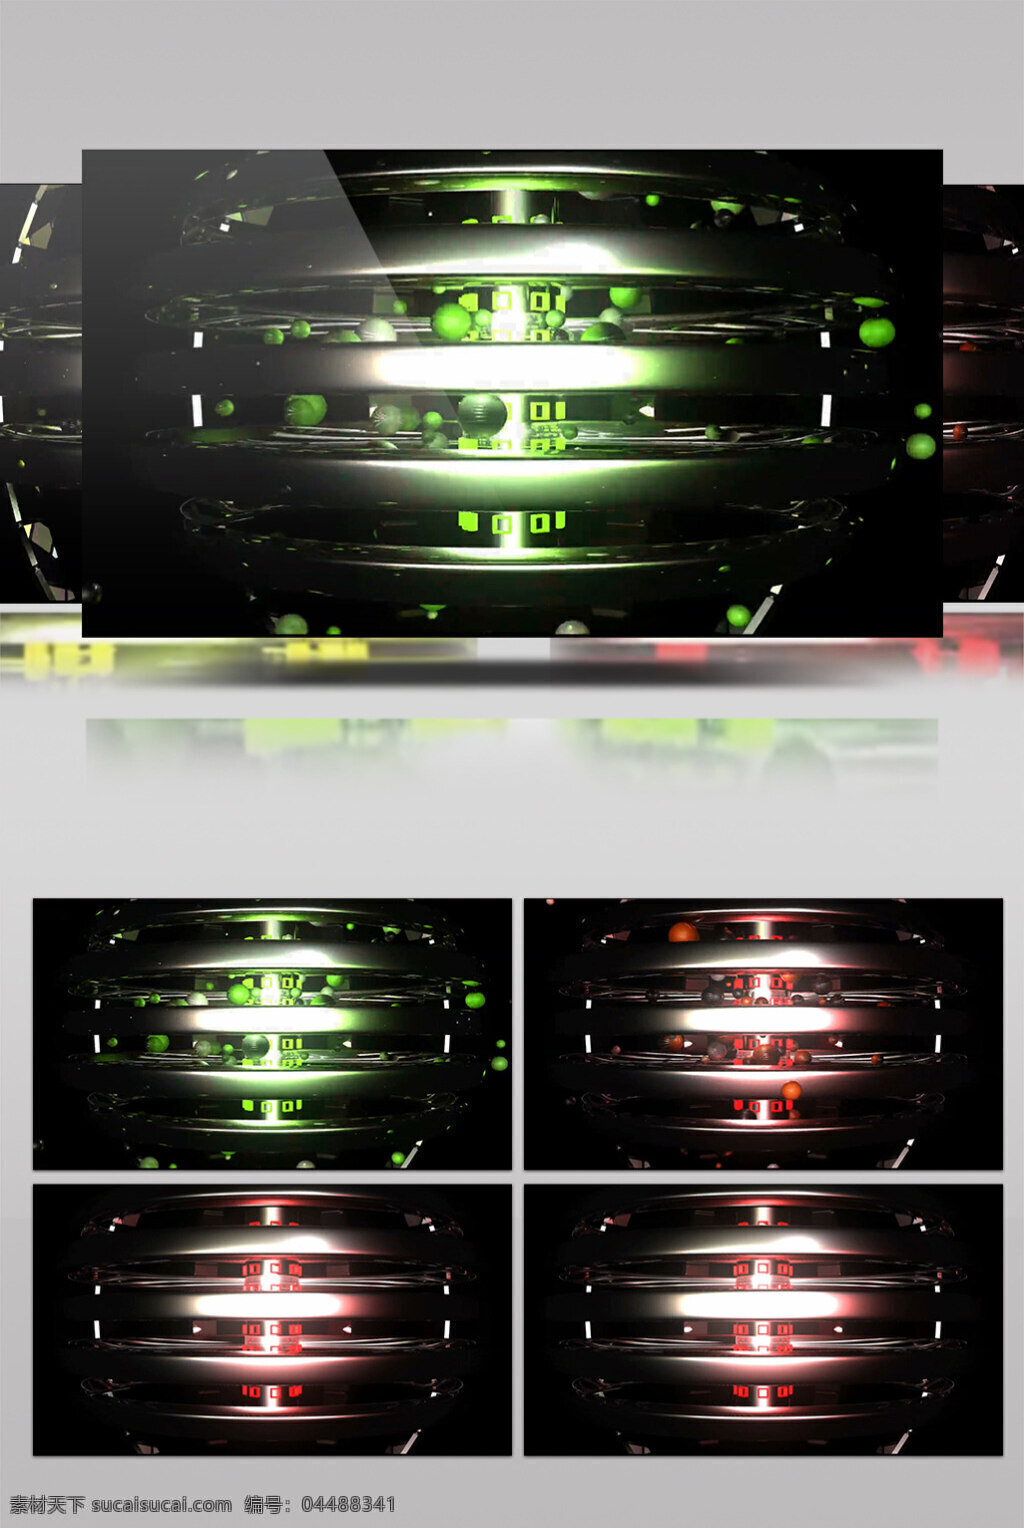 红 绿色 光球 动态 视频 科技未来 红绿色球体 动态星光 华丽流转 光芒四射 3d视频素材 特效视频素材